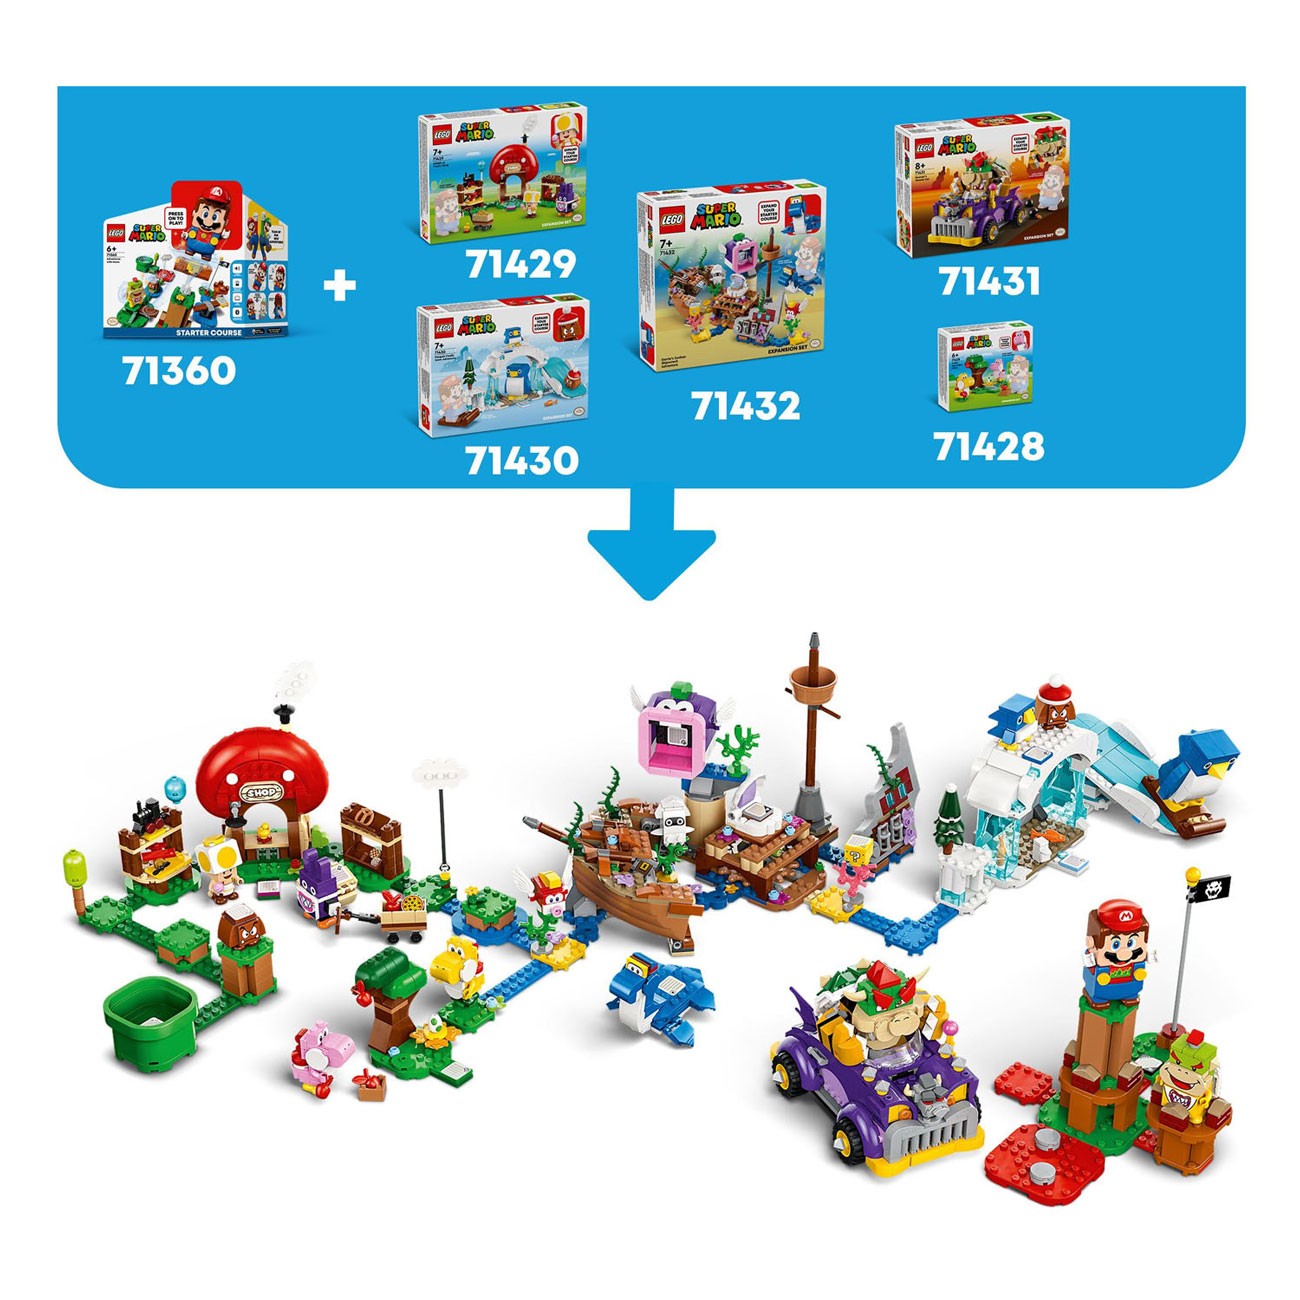 LEGO Super Mario 71429 Uitbreidingsset: Nabbit bij Toads winkeltje